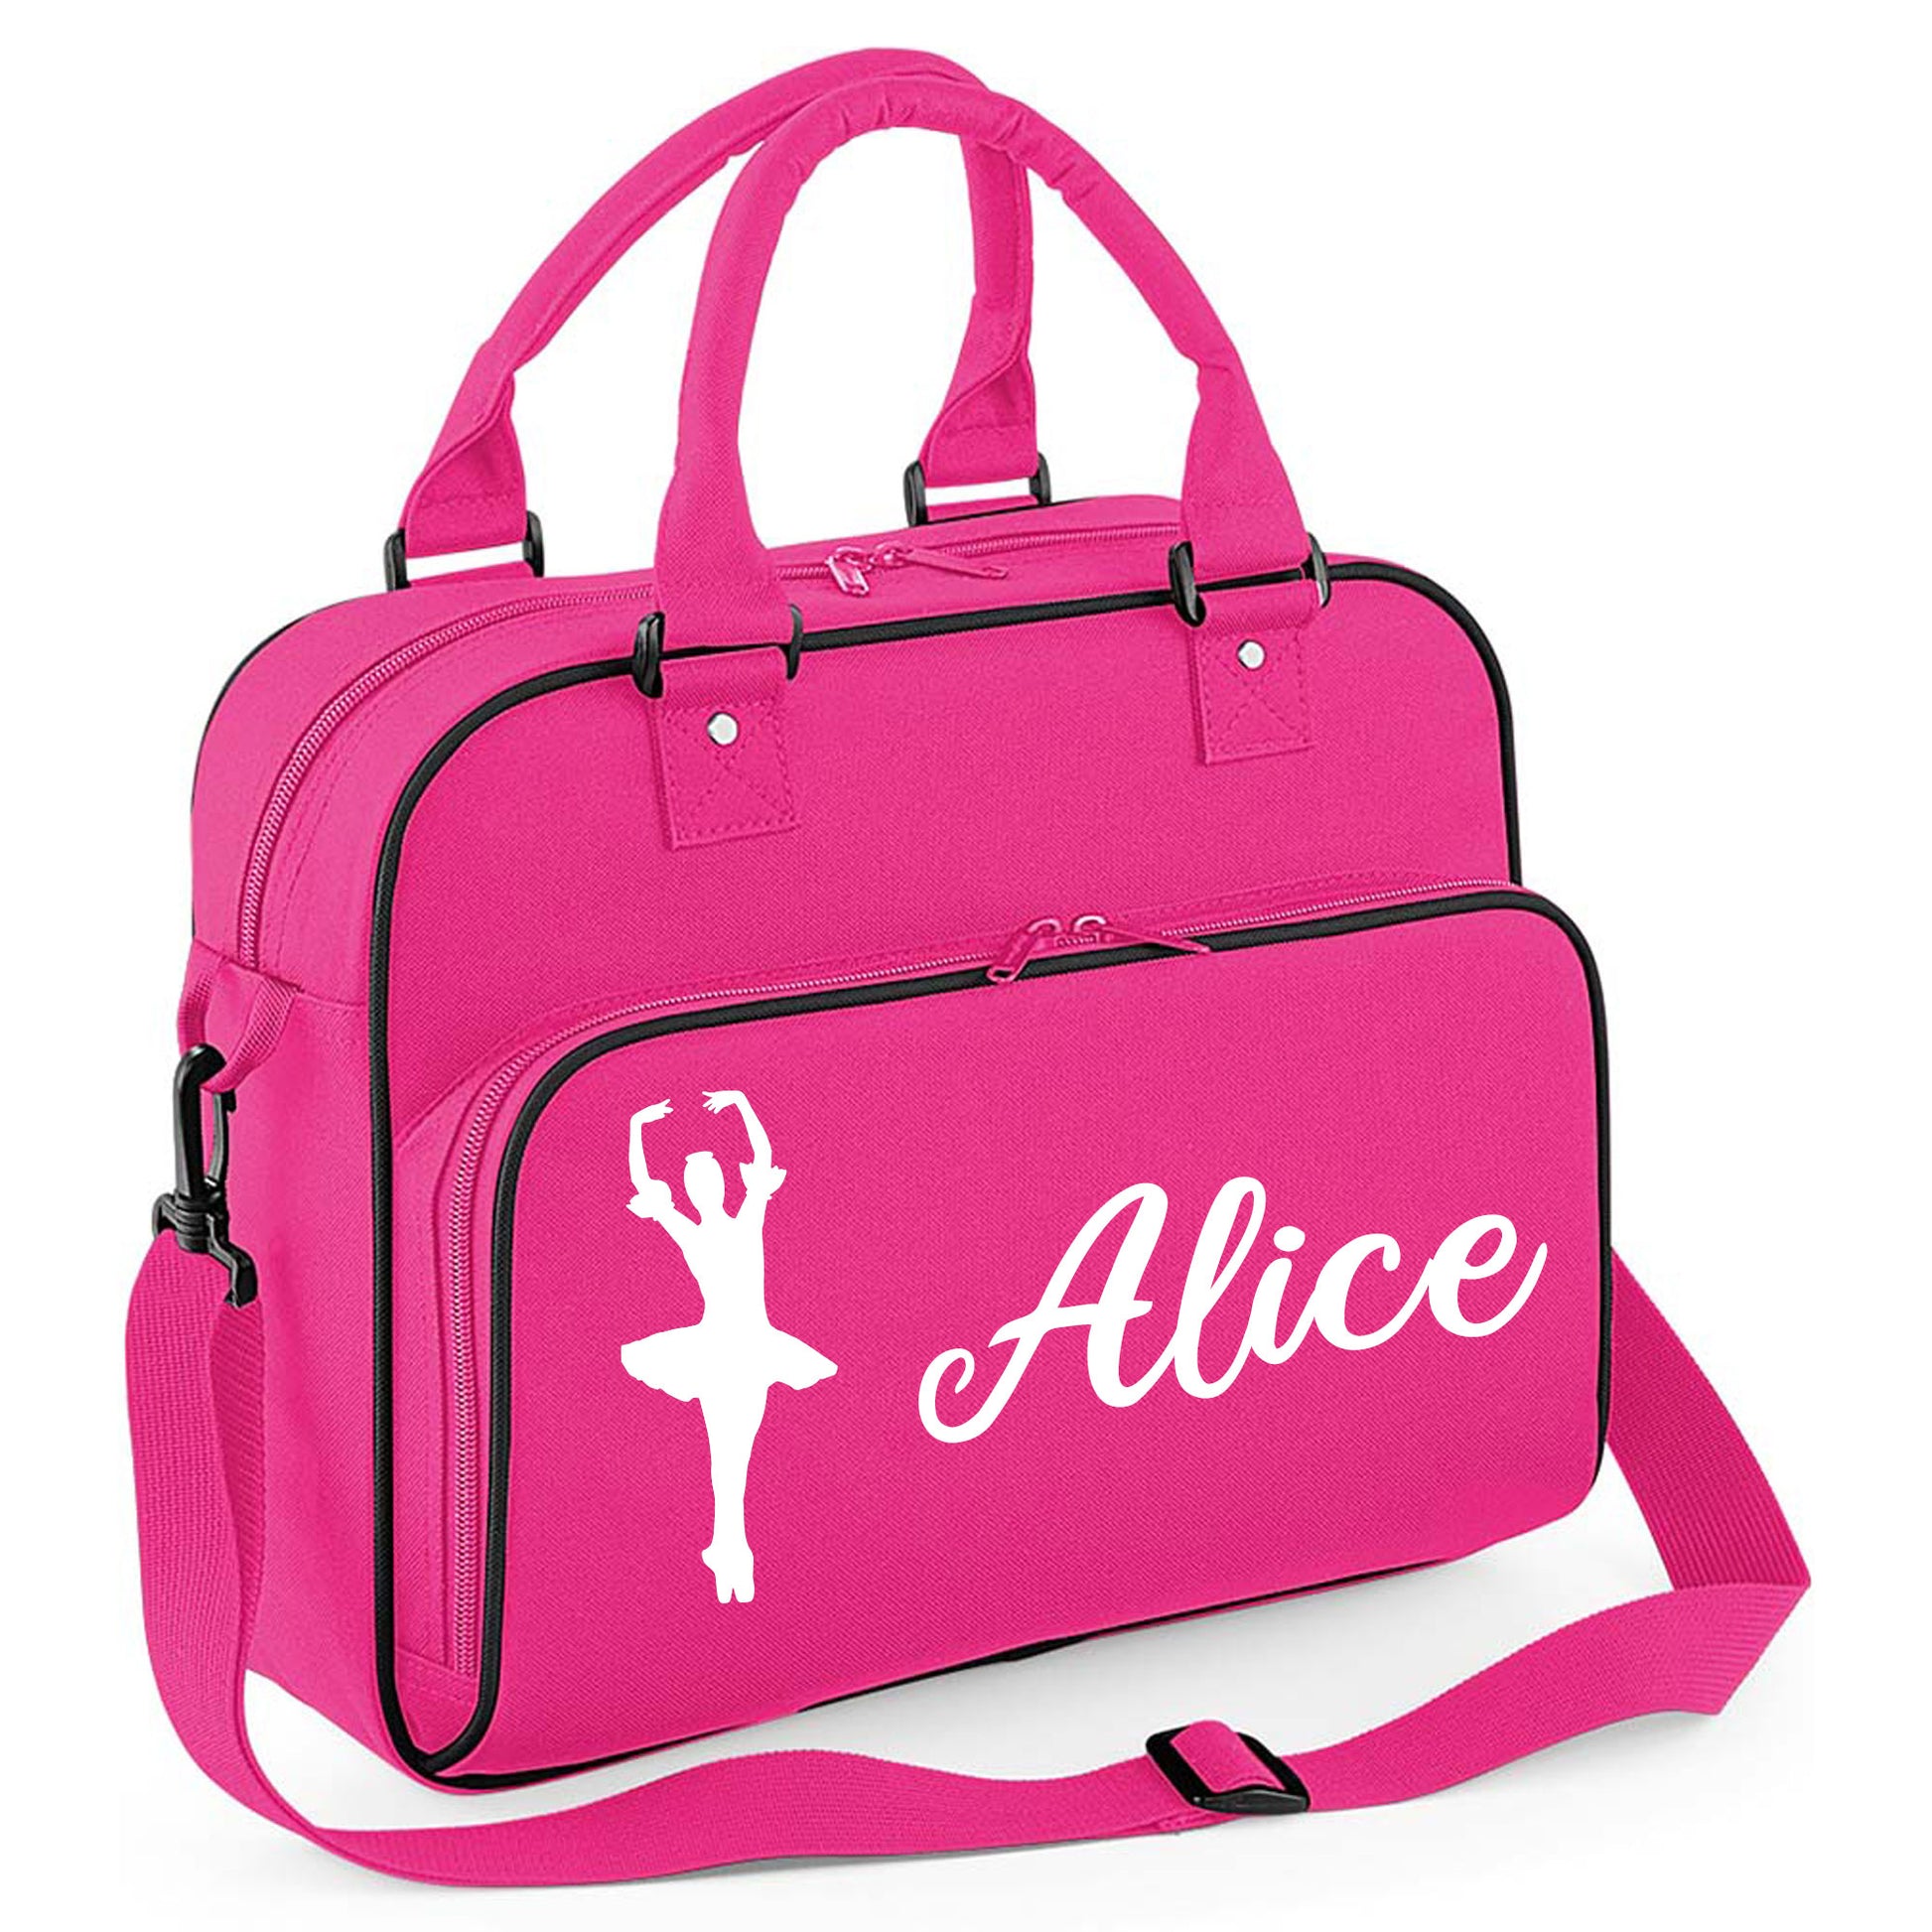 Personalised Dance Bag Kids | Girls Children's Ballet School Bag  - Always Looking Good - Hot Pink Ballet Dancer 